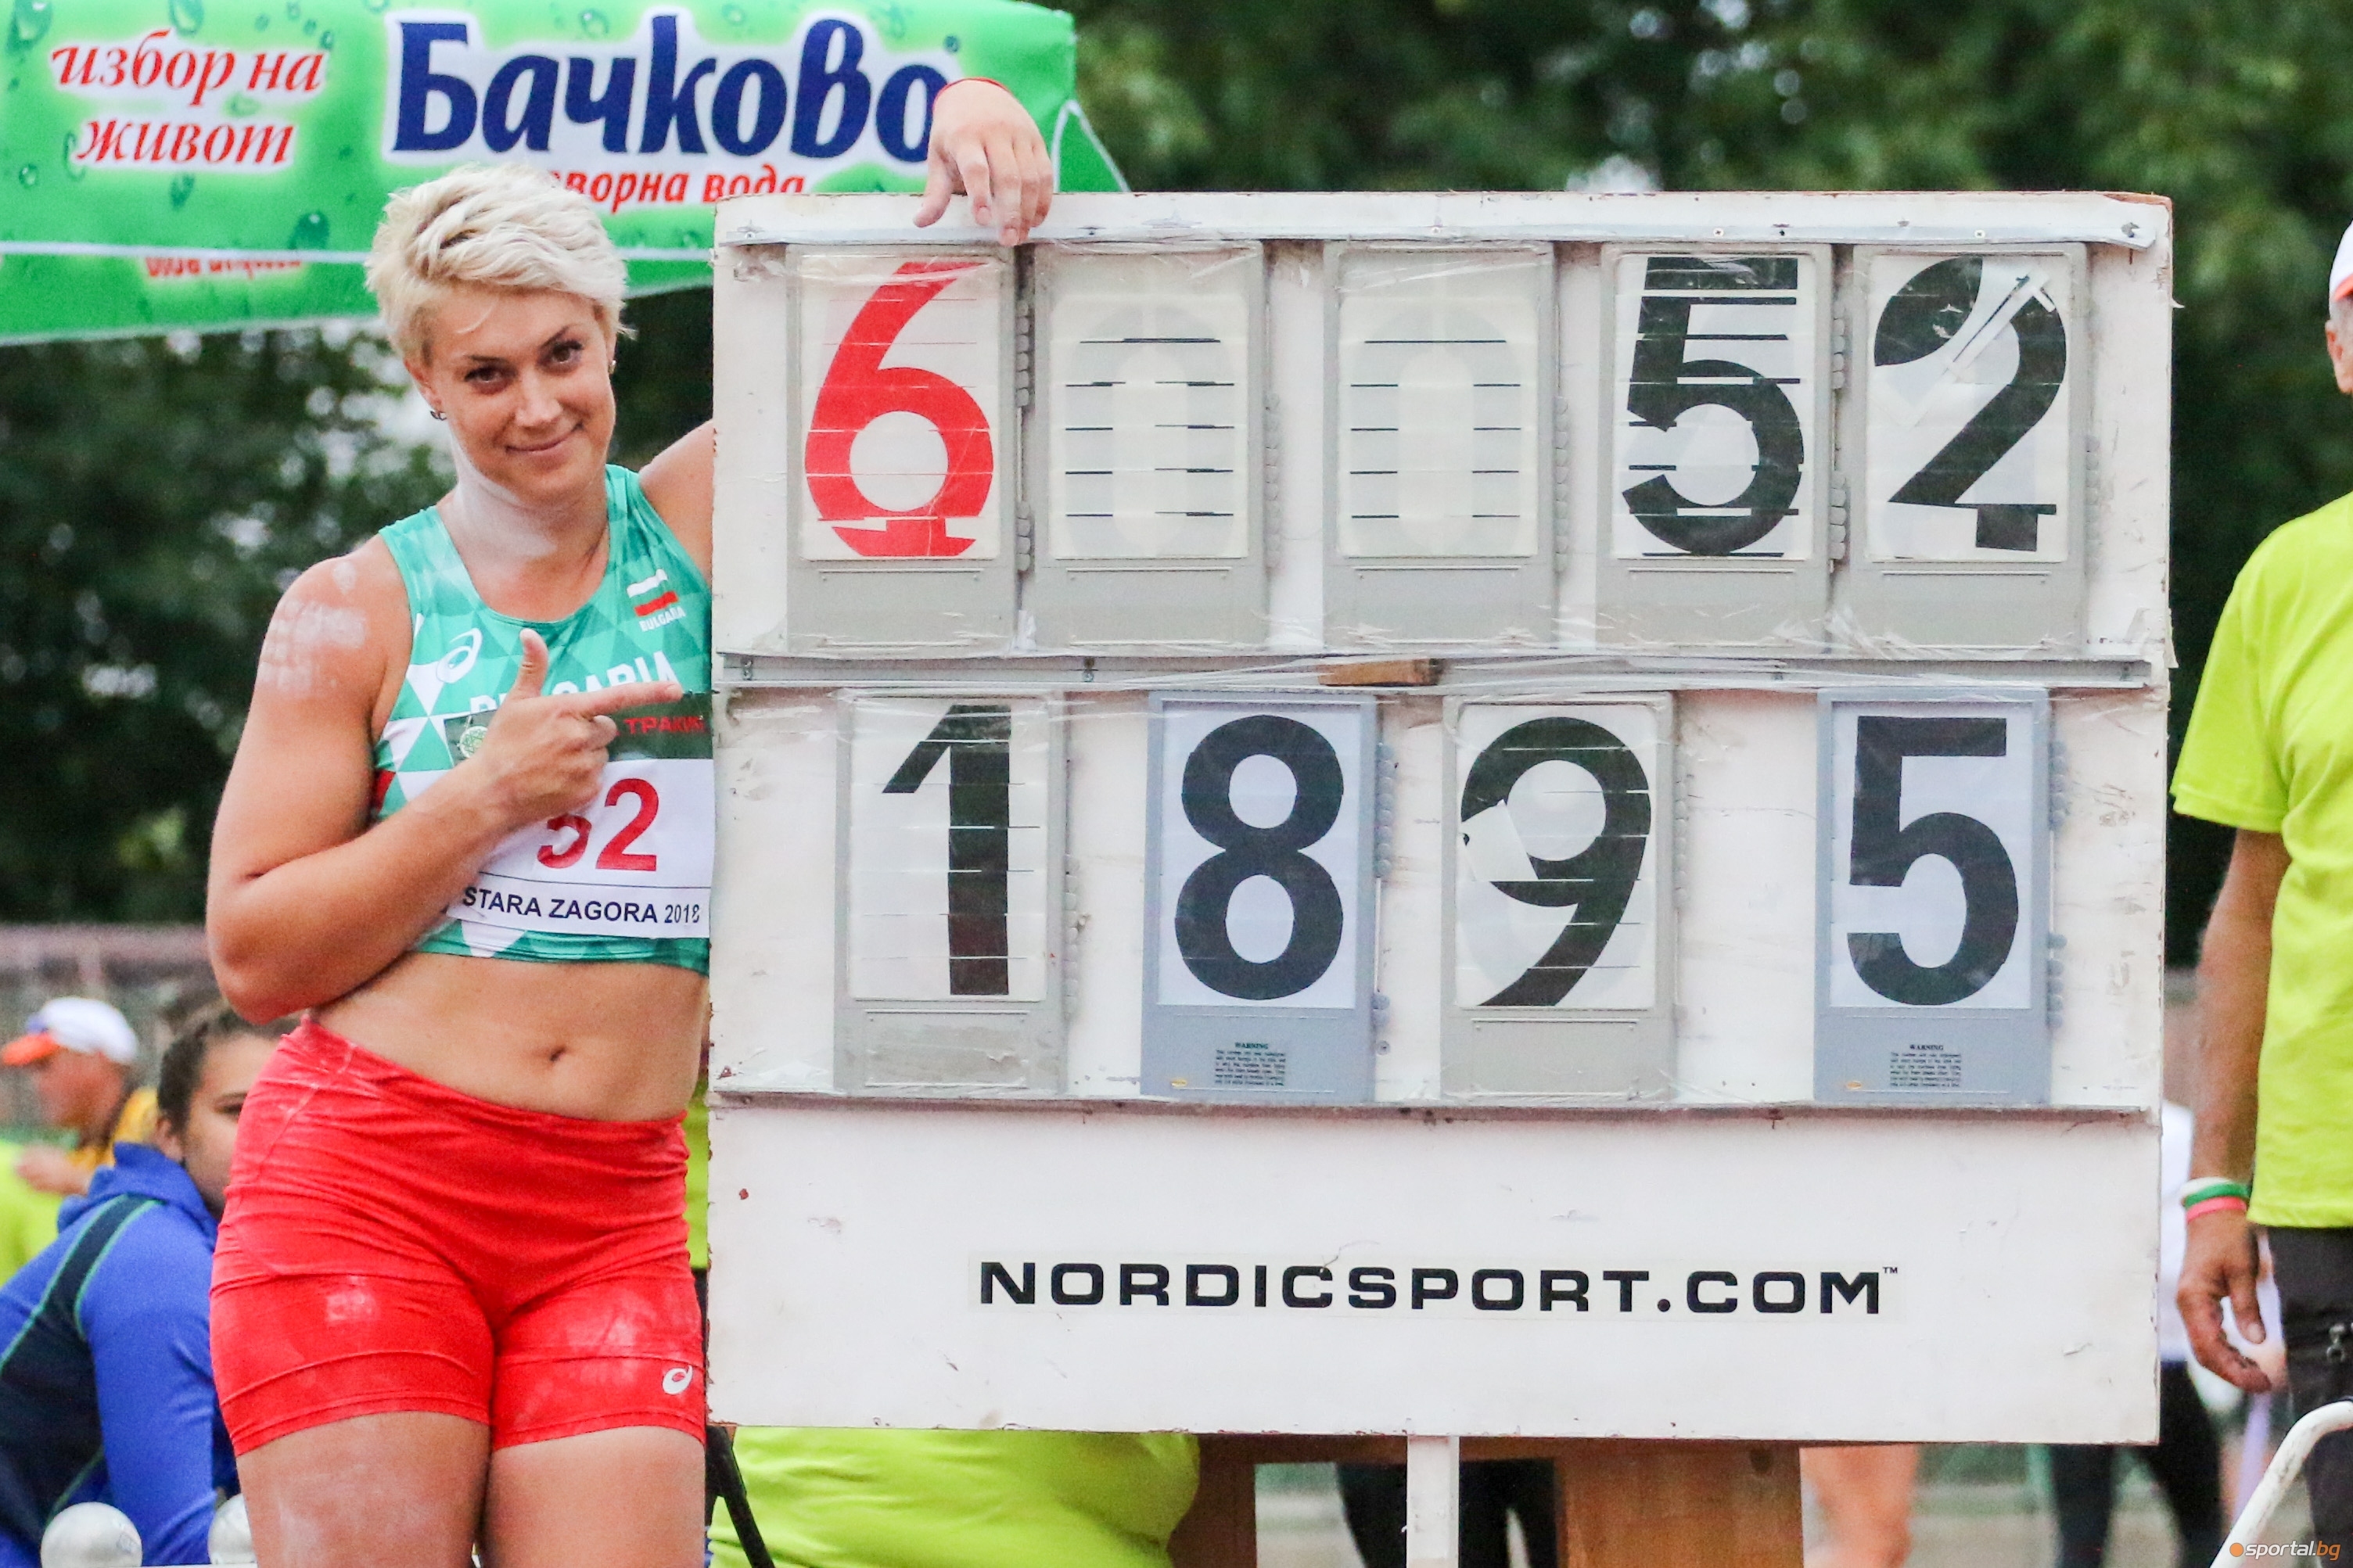 Радослава Мавродиева е с последен стартов номер (12) във финала